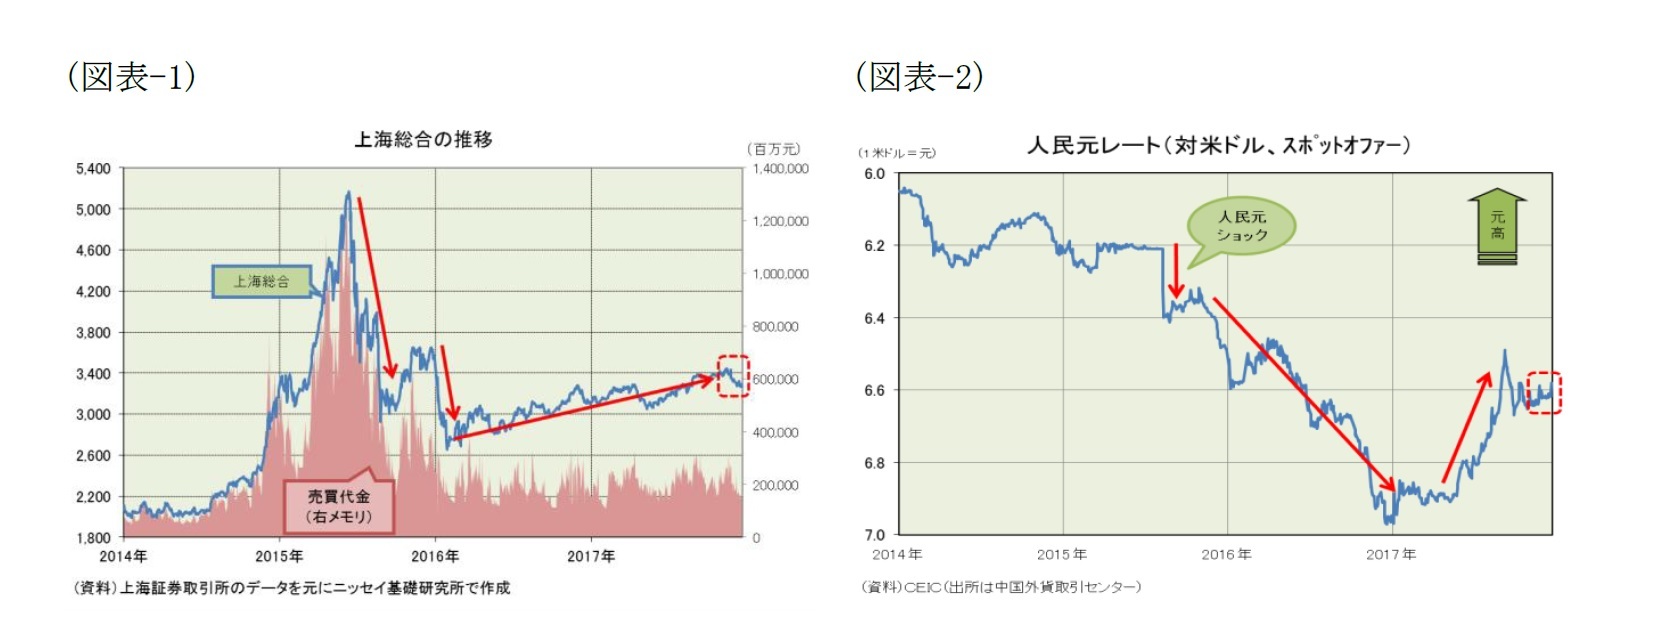 （図表-1）上海総合の推移/（図表-2）人民元レート(対米ドル、スポットオファー)